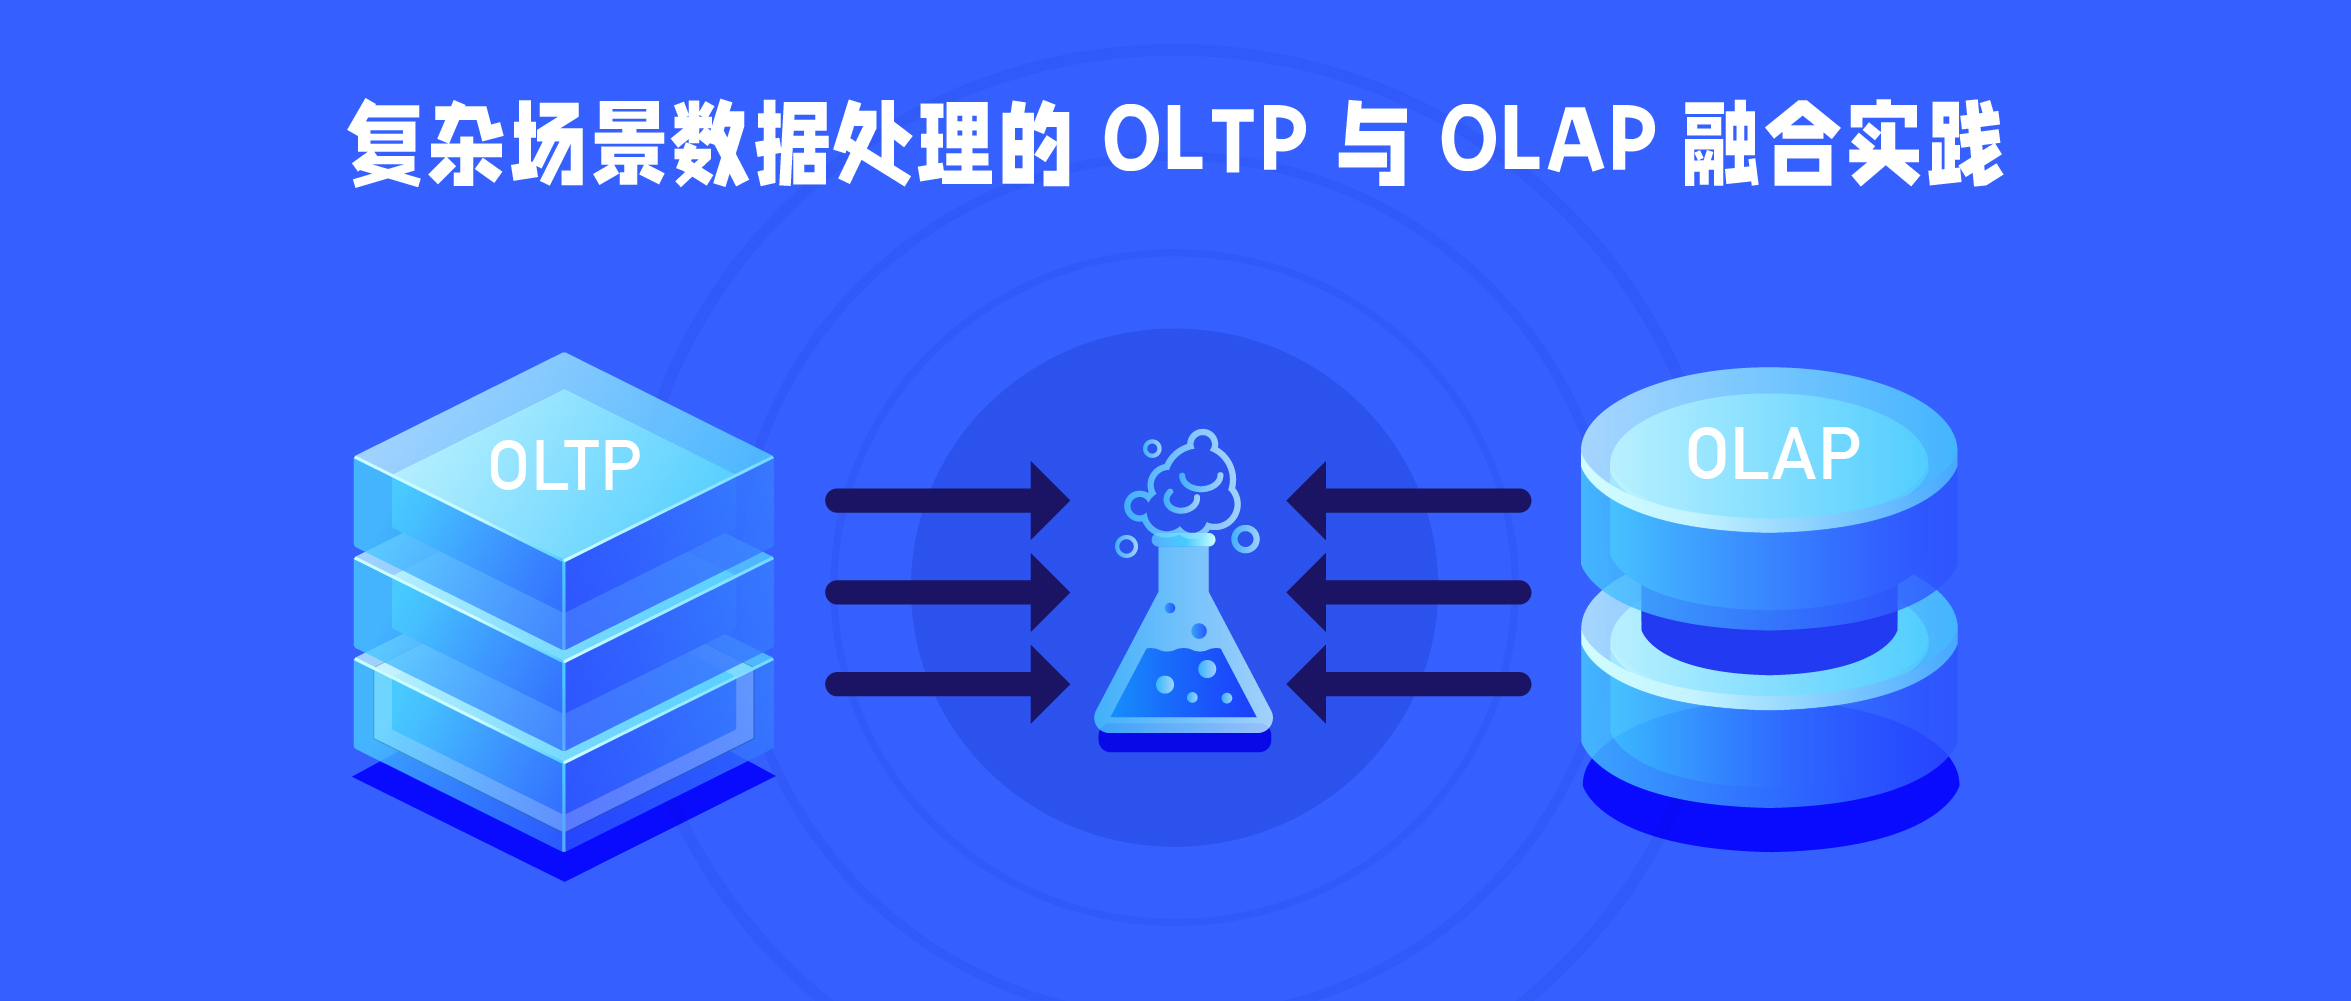 複雜場景資料處理的 OLTP 與 OLAP 融合實踐